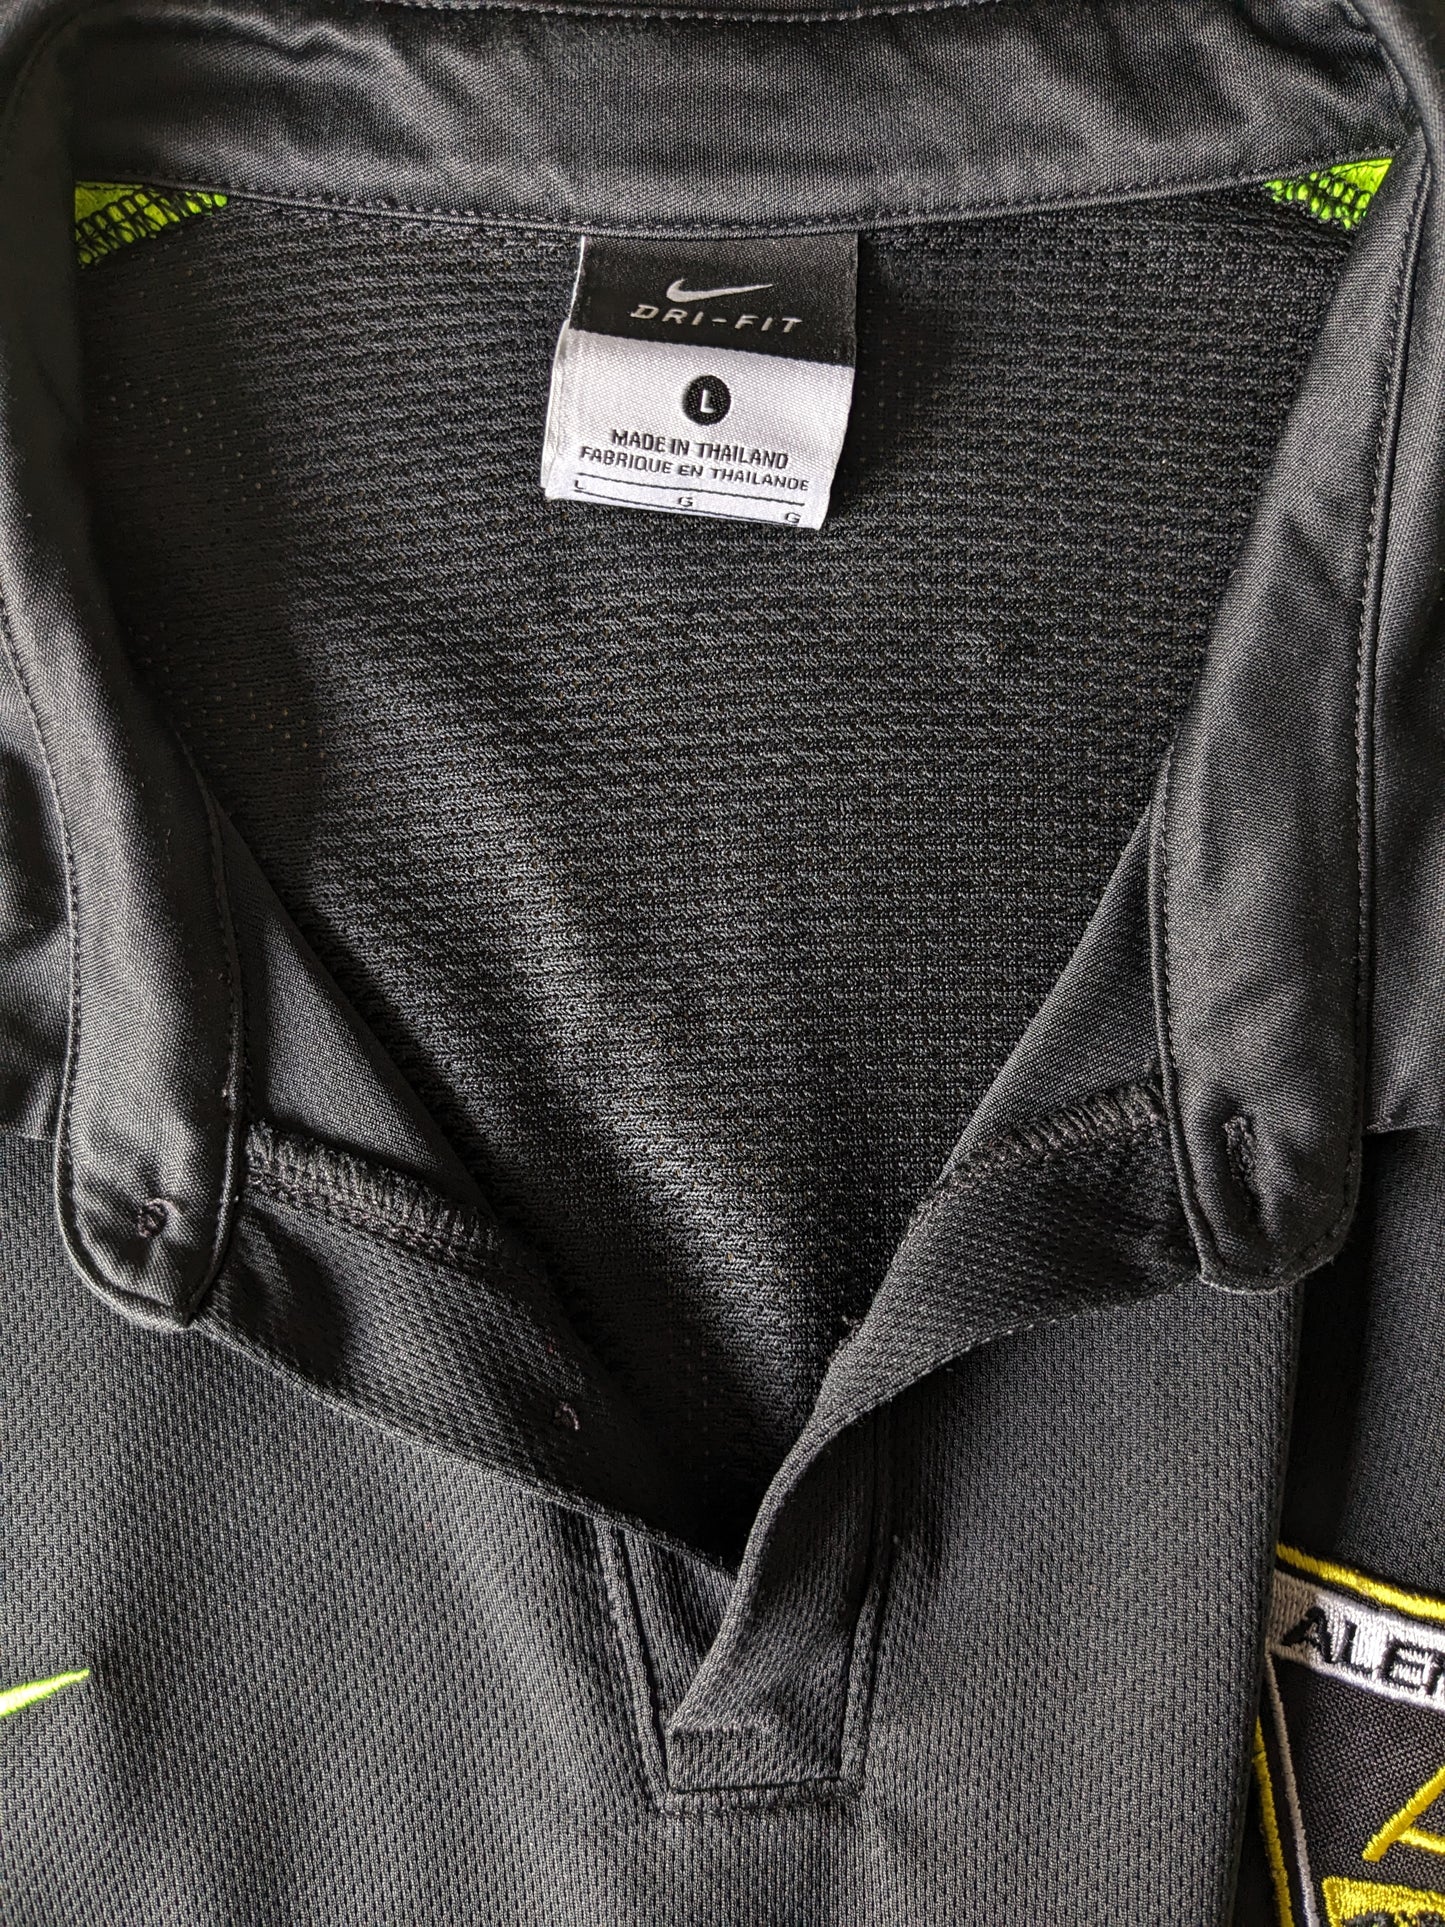 Nike Alemannia Sport Polo. Couleur verte noire. Taille L.